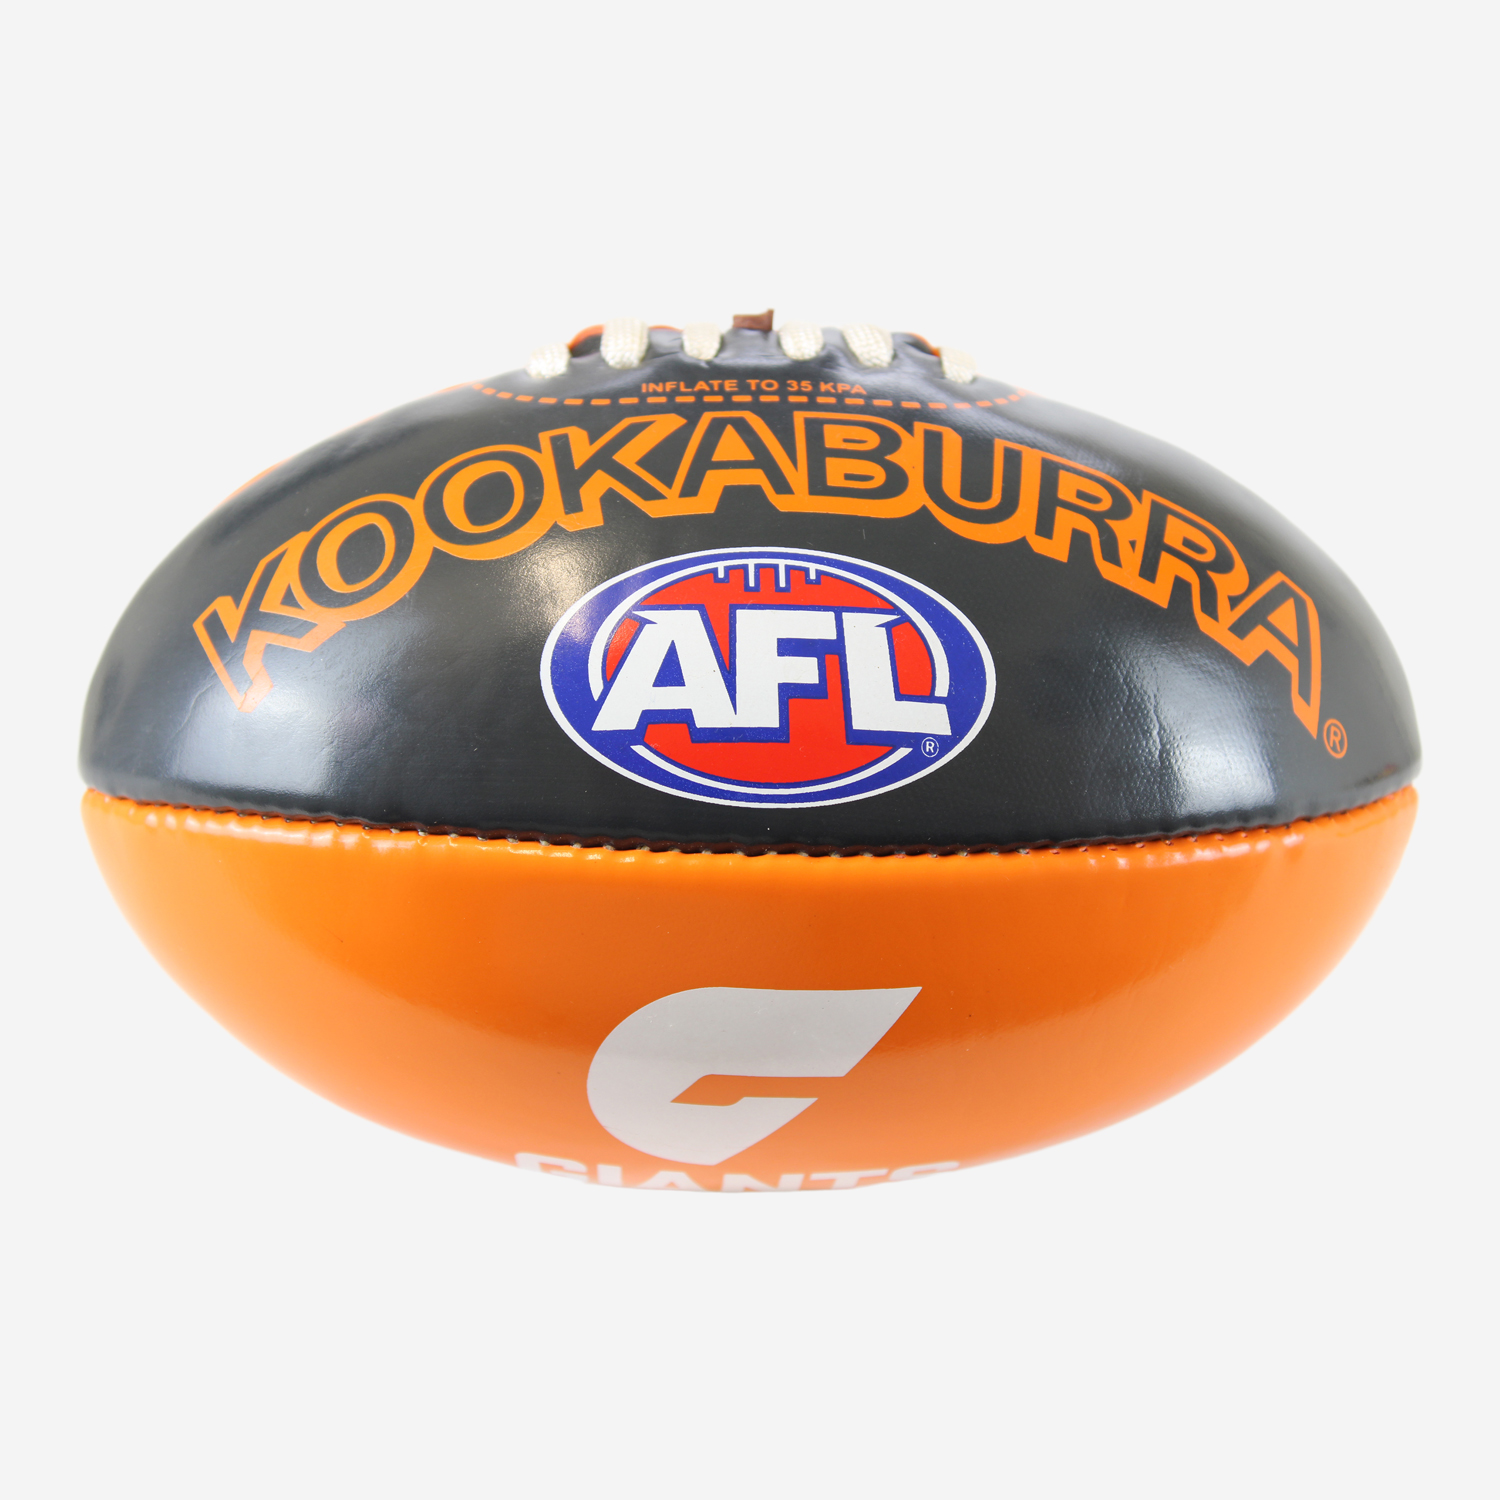 Kookaburra AFL Mini PVC Football 20CM GWS Giants